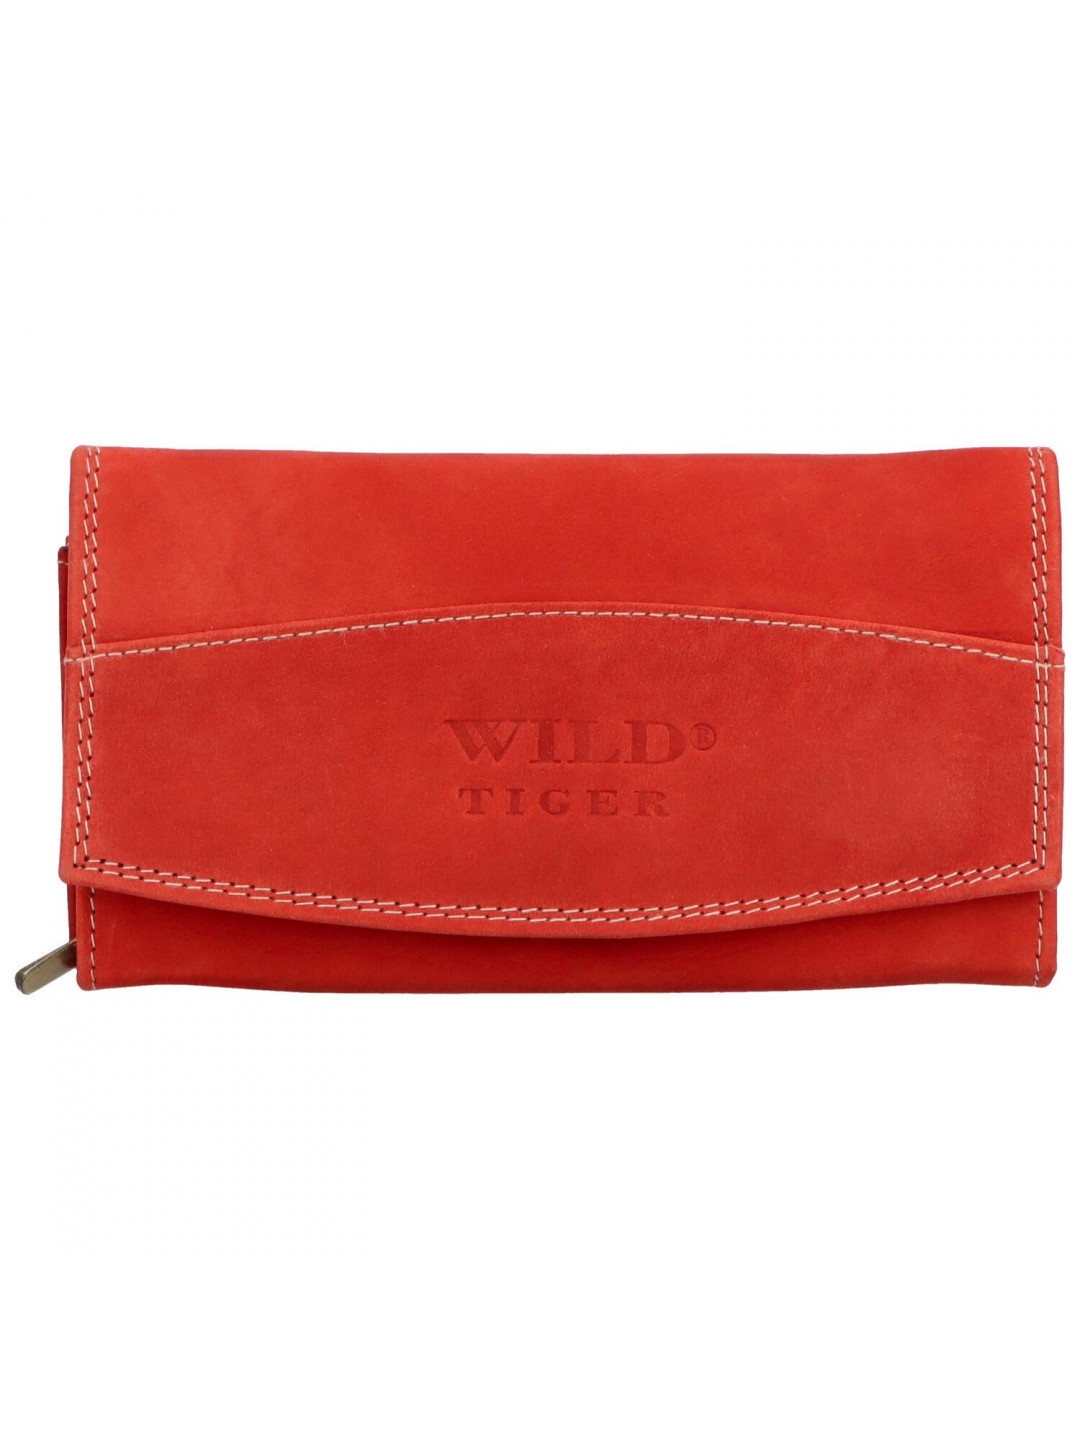 Dámská kožená peněženka červená – Wild Tiger Liliane